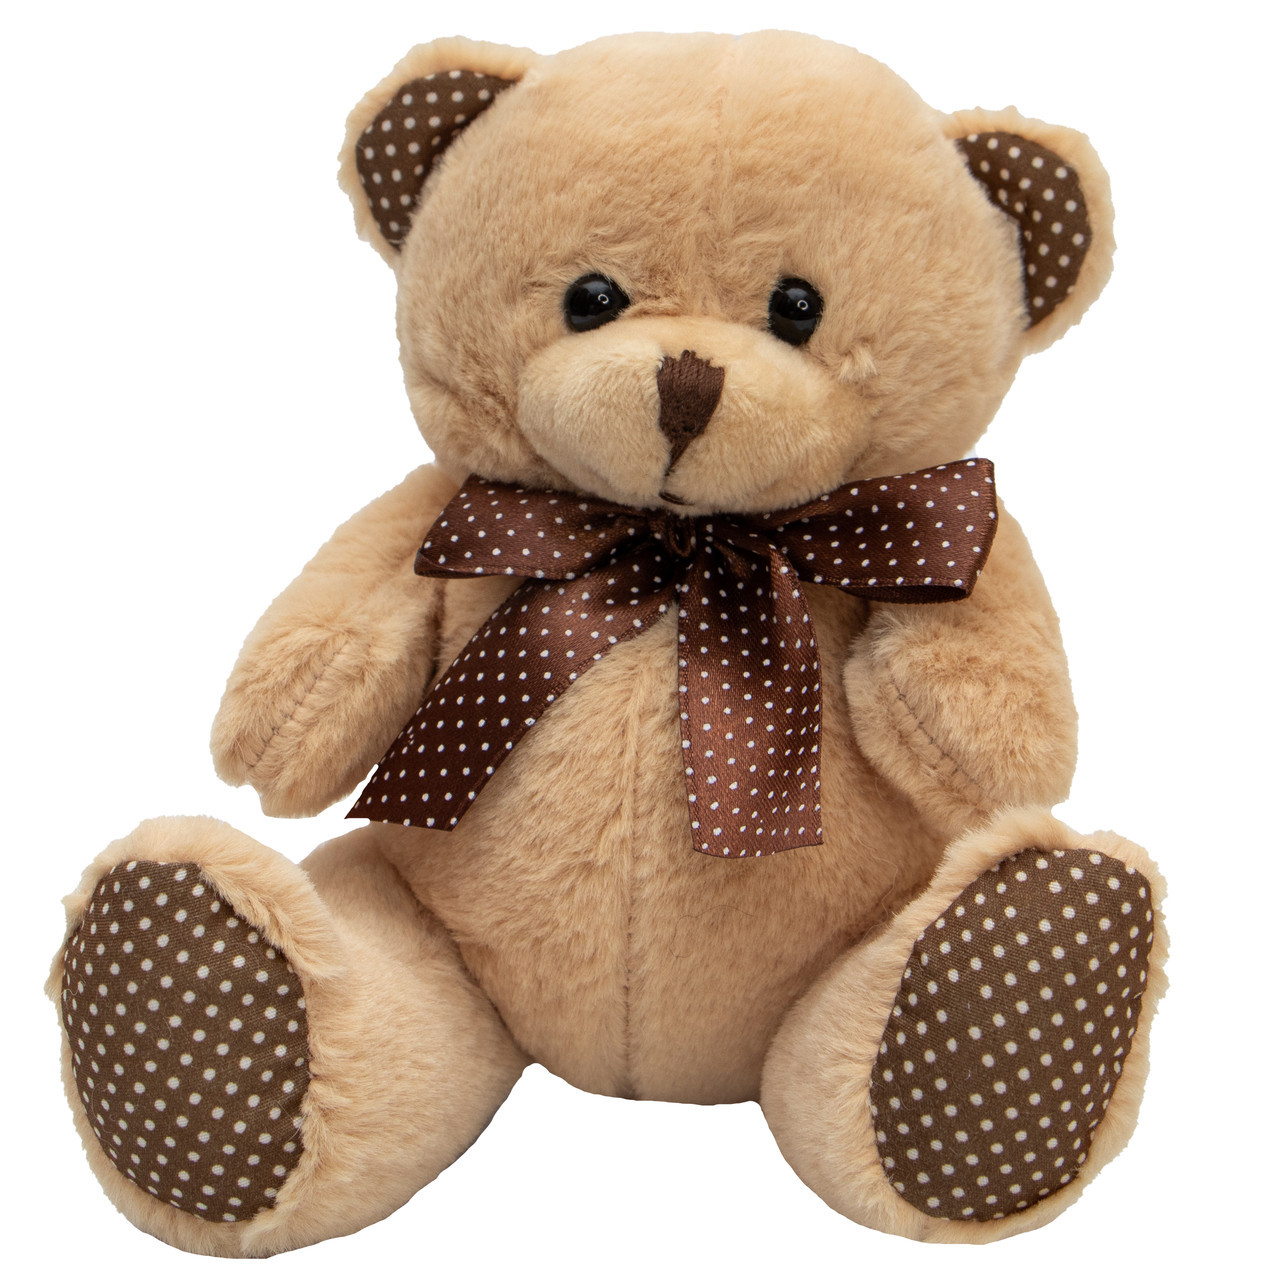 М'яка іграшка - ведмідь, 15 см, бежевий, плюш (395742)